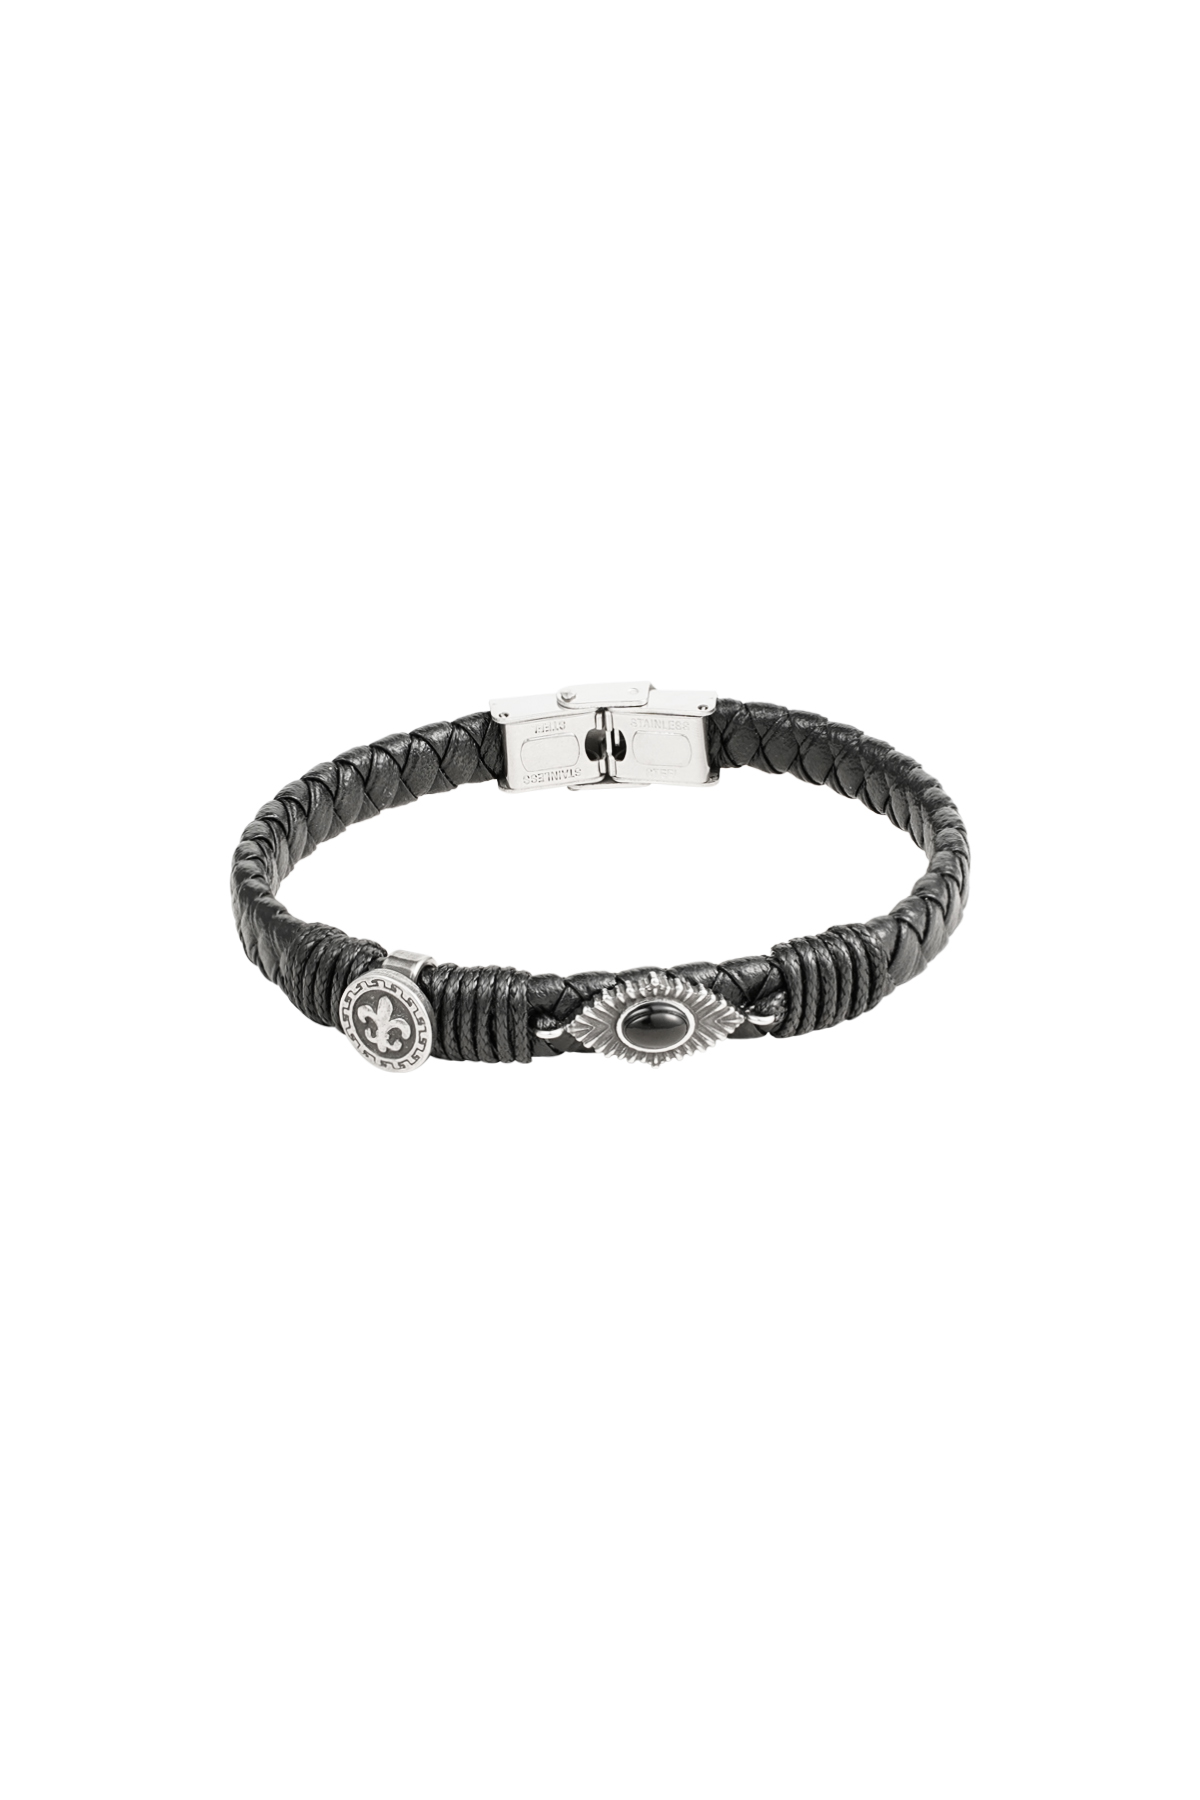 Heren armband gevlochten met steentjes - zilver/zwart